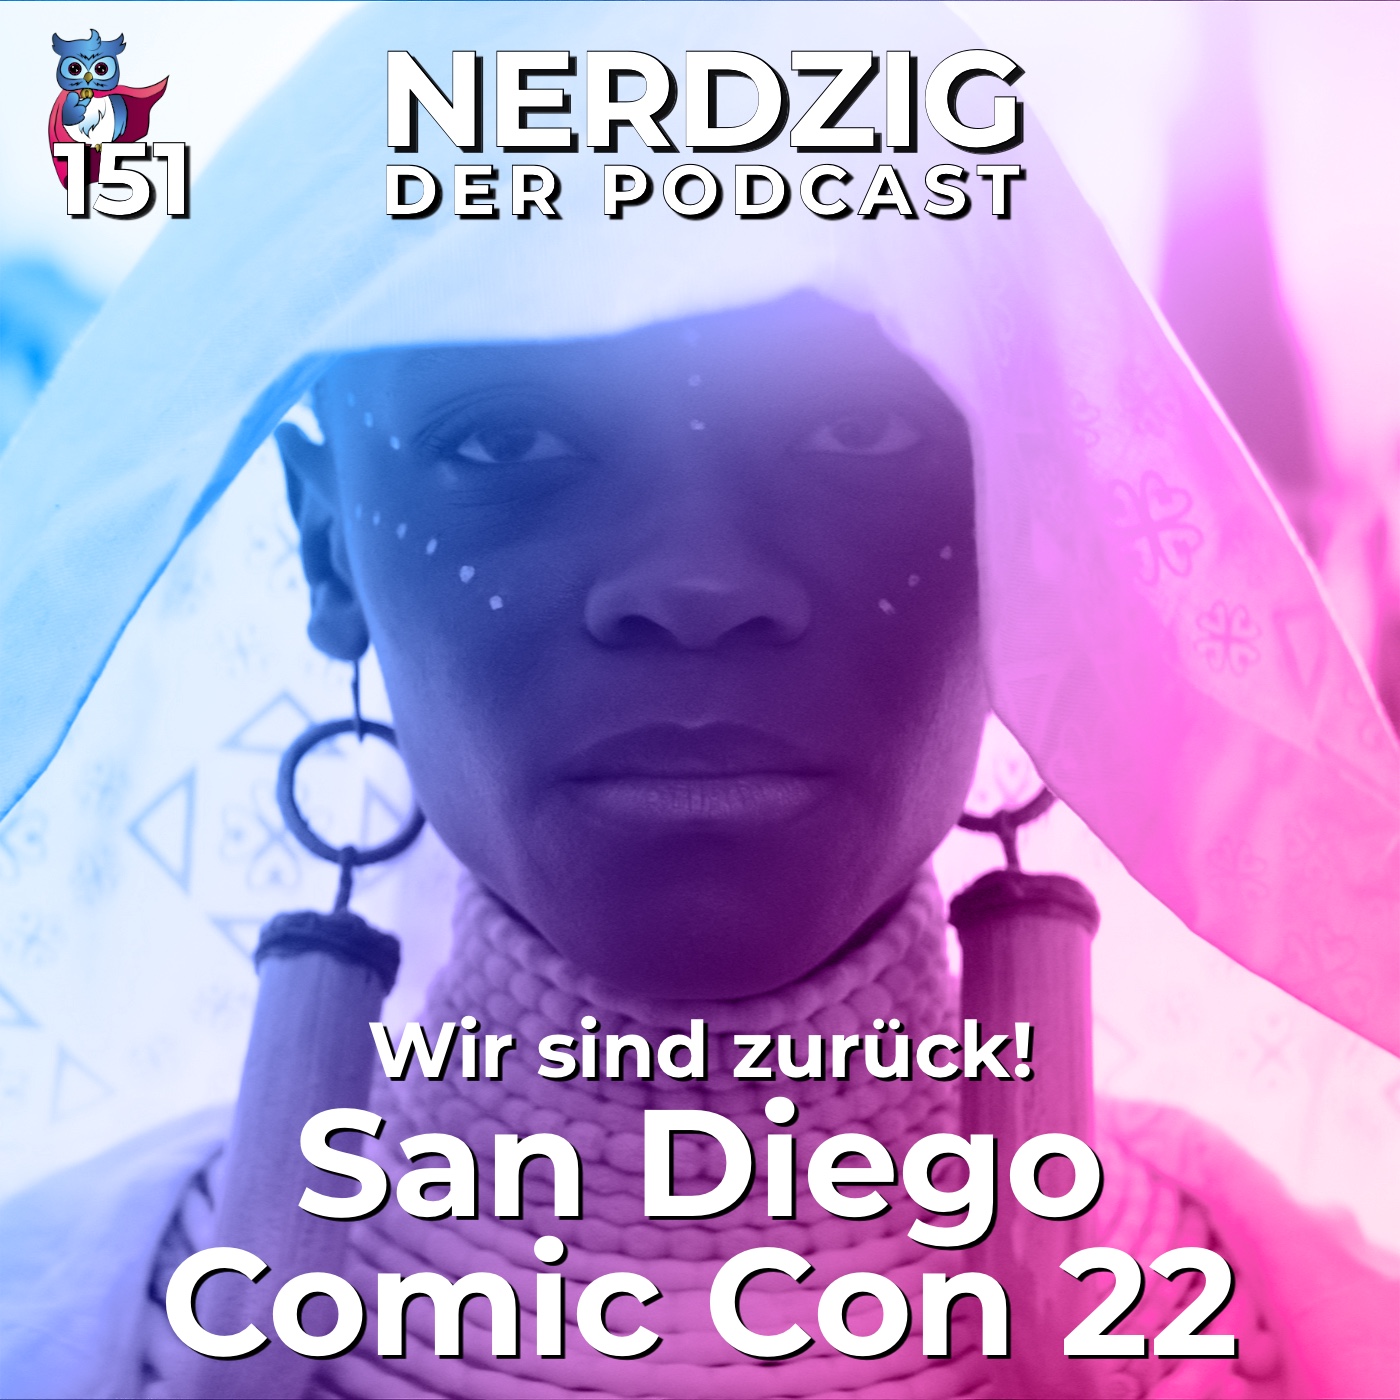 Nerdzig - Der Podcast #151 – San Diego Comic Con 2022